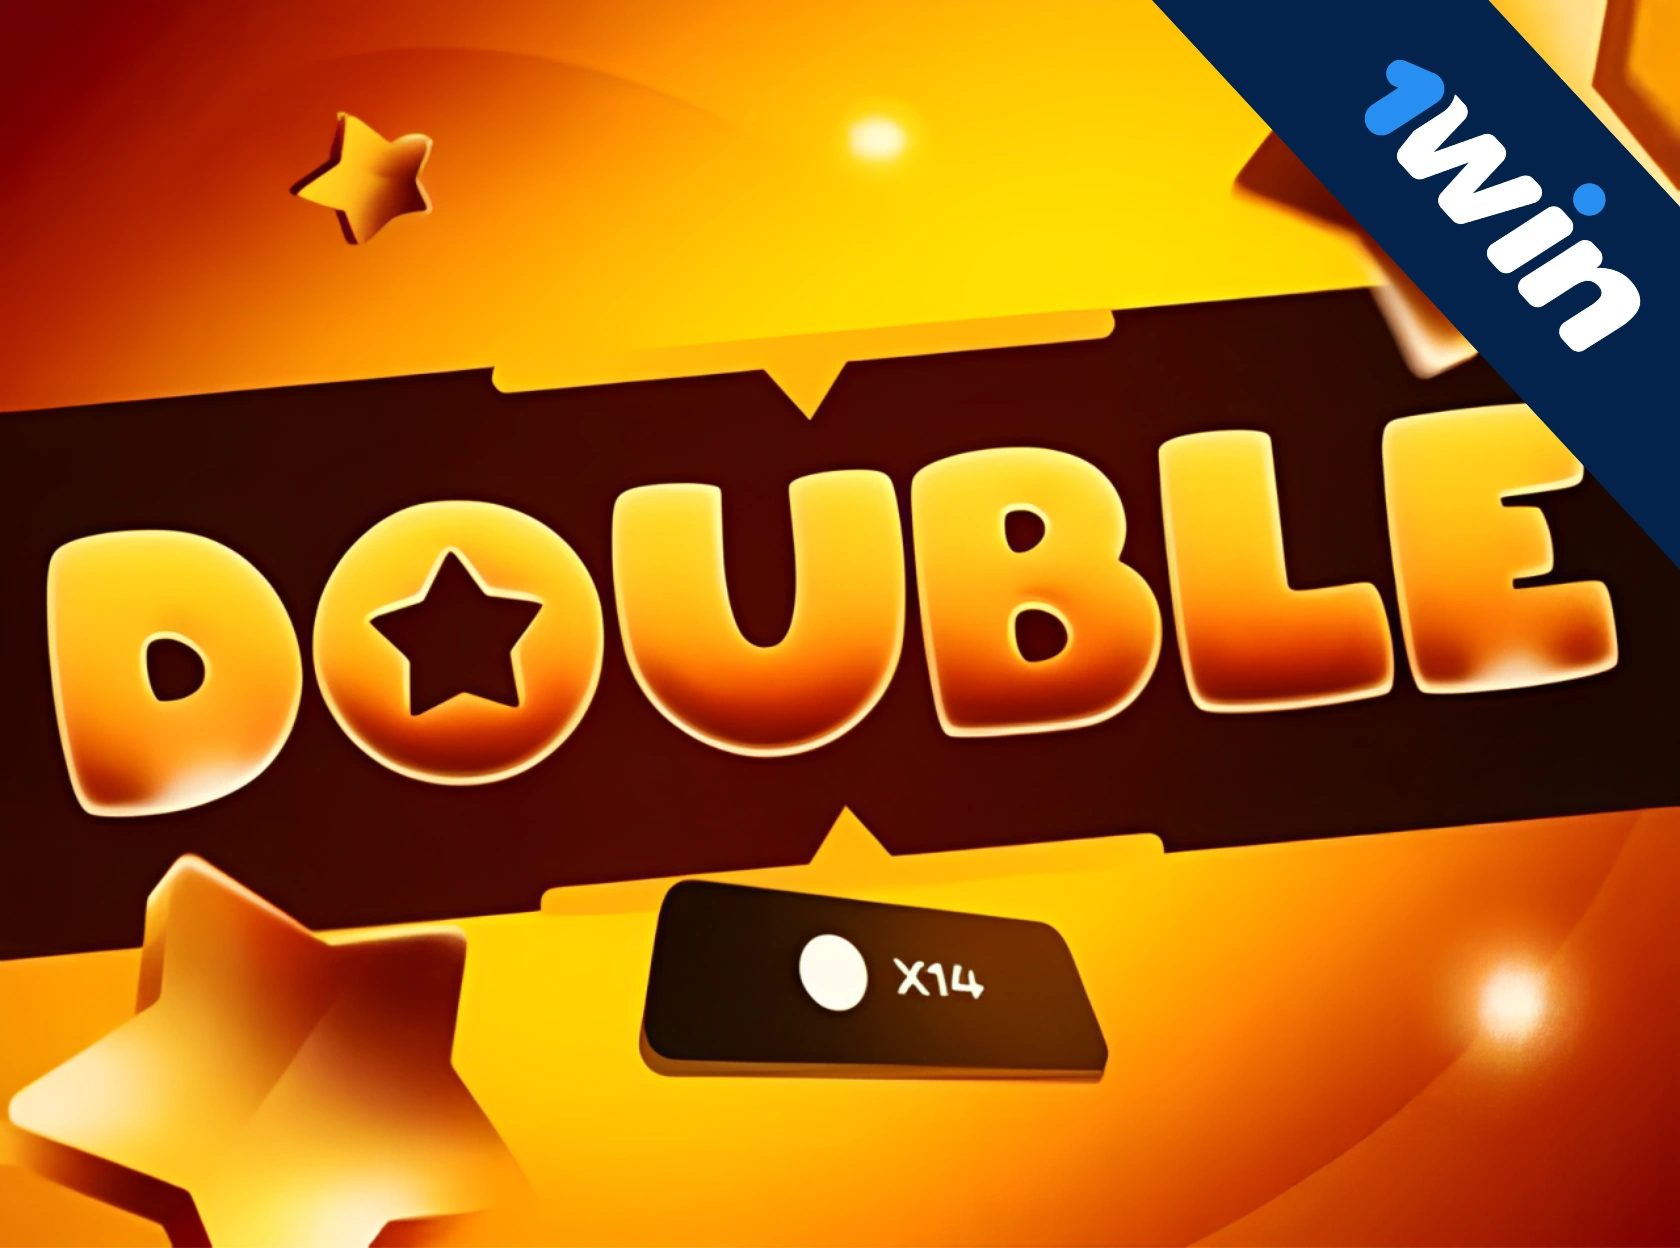 Double 1win yeni eksklüziv oyundur!